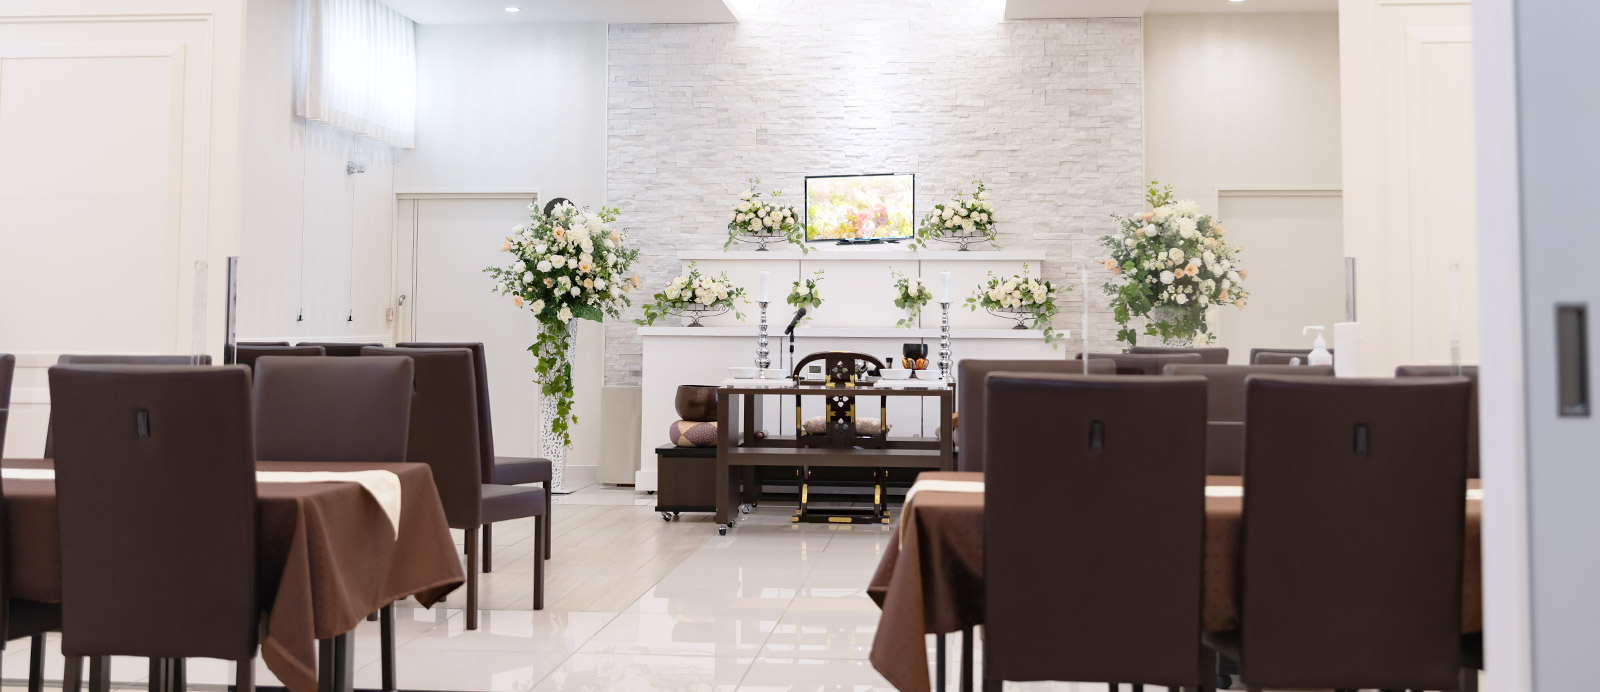 南小泉ホールで葬儀・葬式が9.5万円からできる家族葬の仙和のホールの内装イメージ